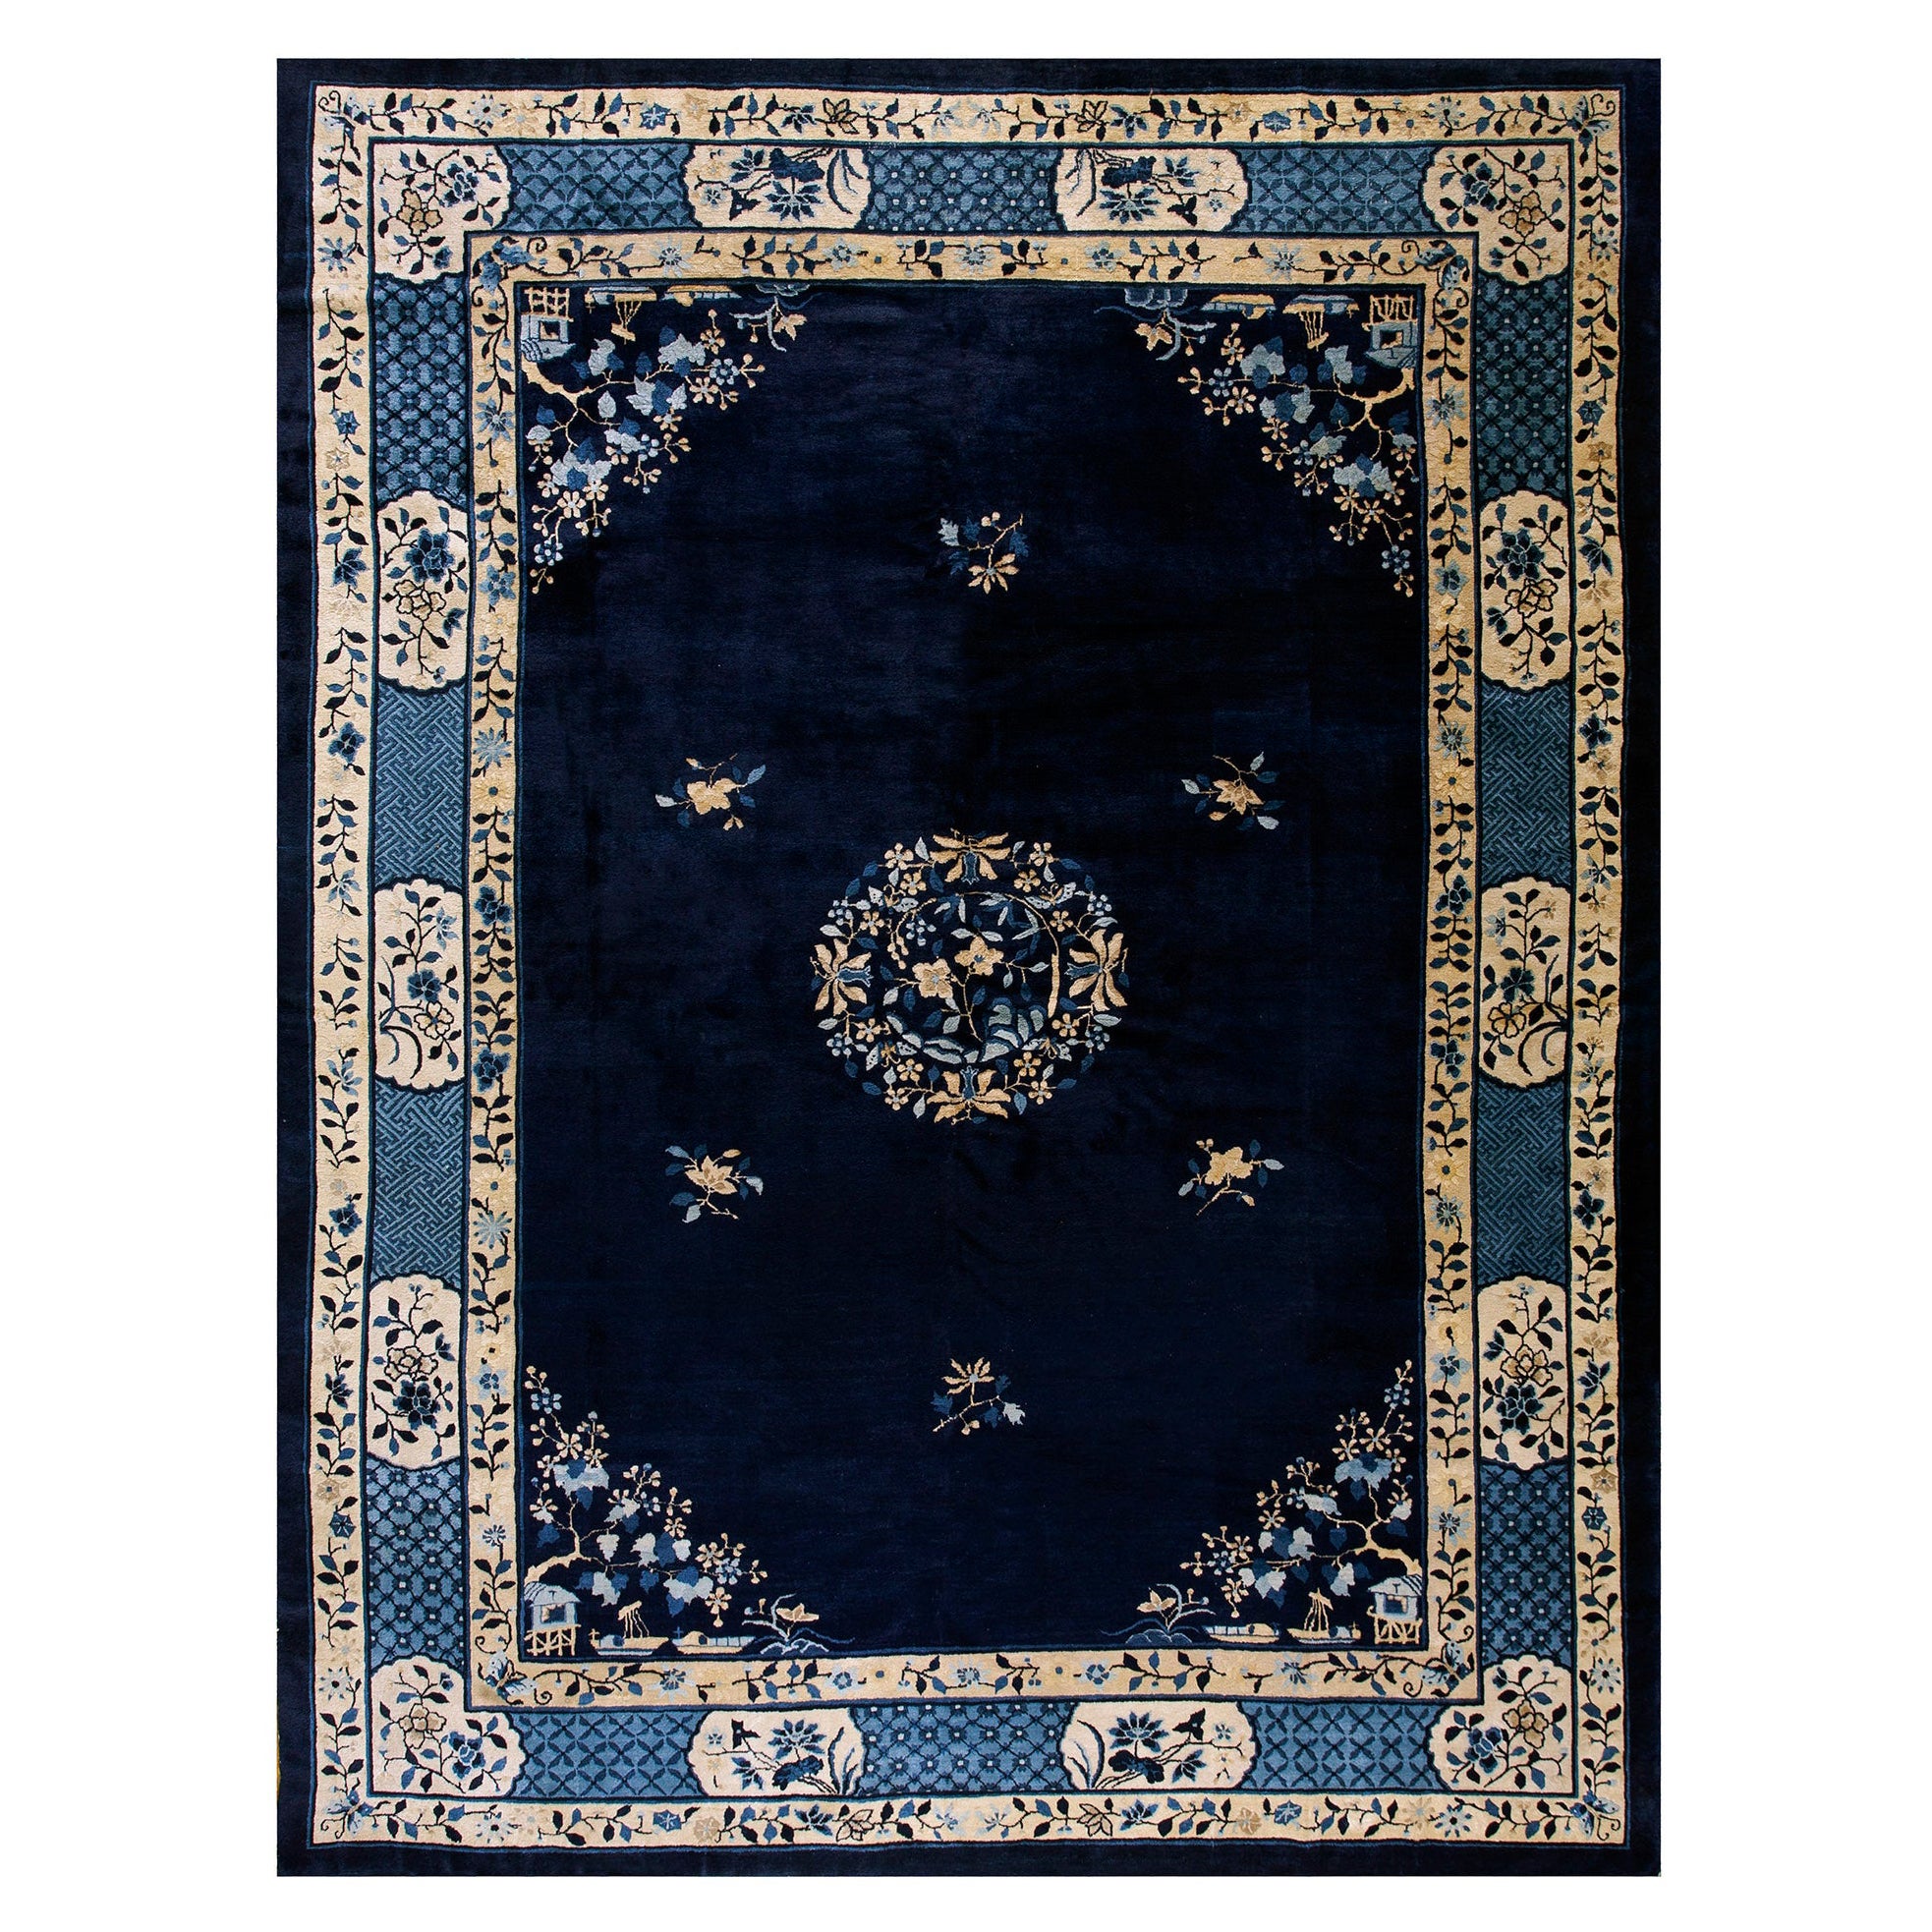 Chinesischer Pekinger Teppich des späten 19. Jahrhunderts ( 10'2"" x 13'4"" - 310 x 405 cm)